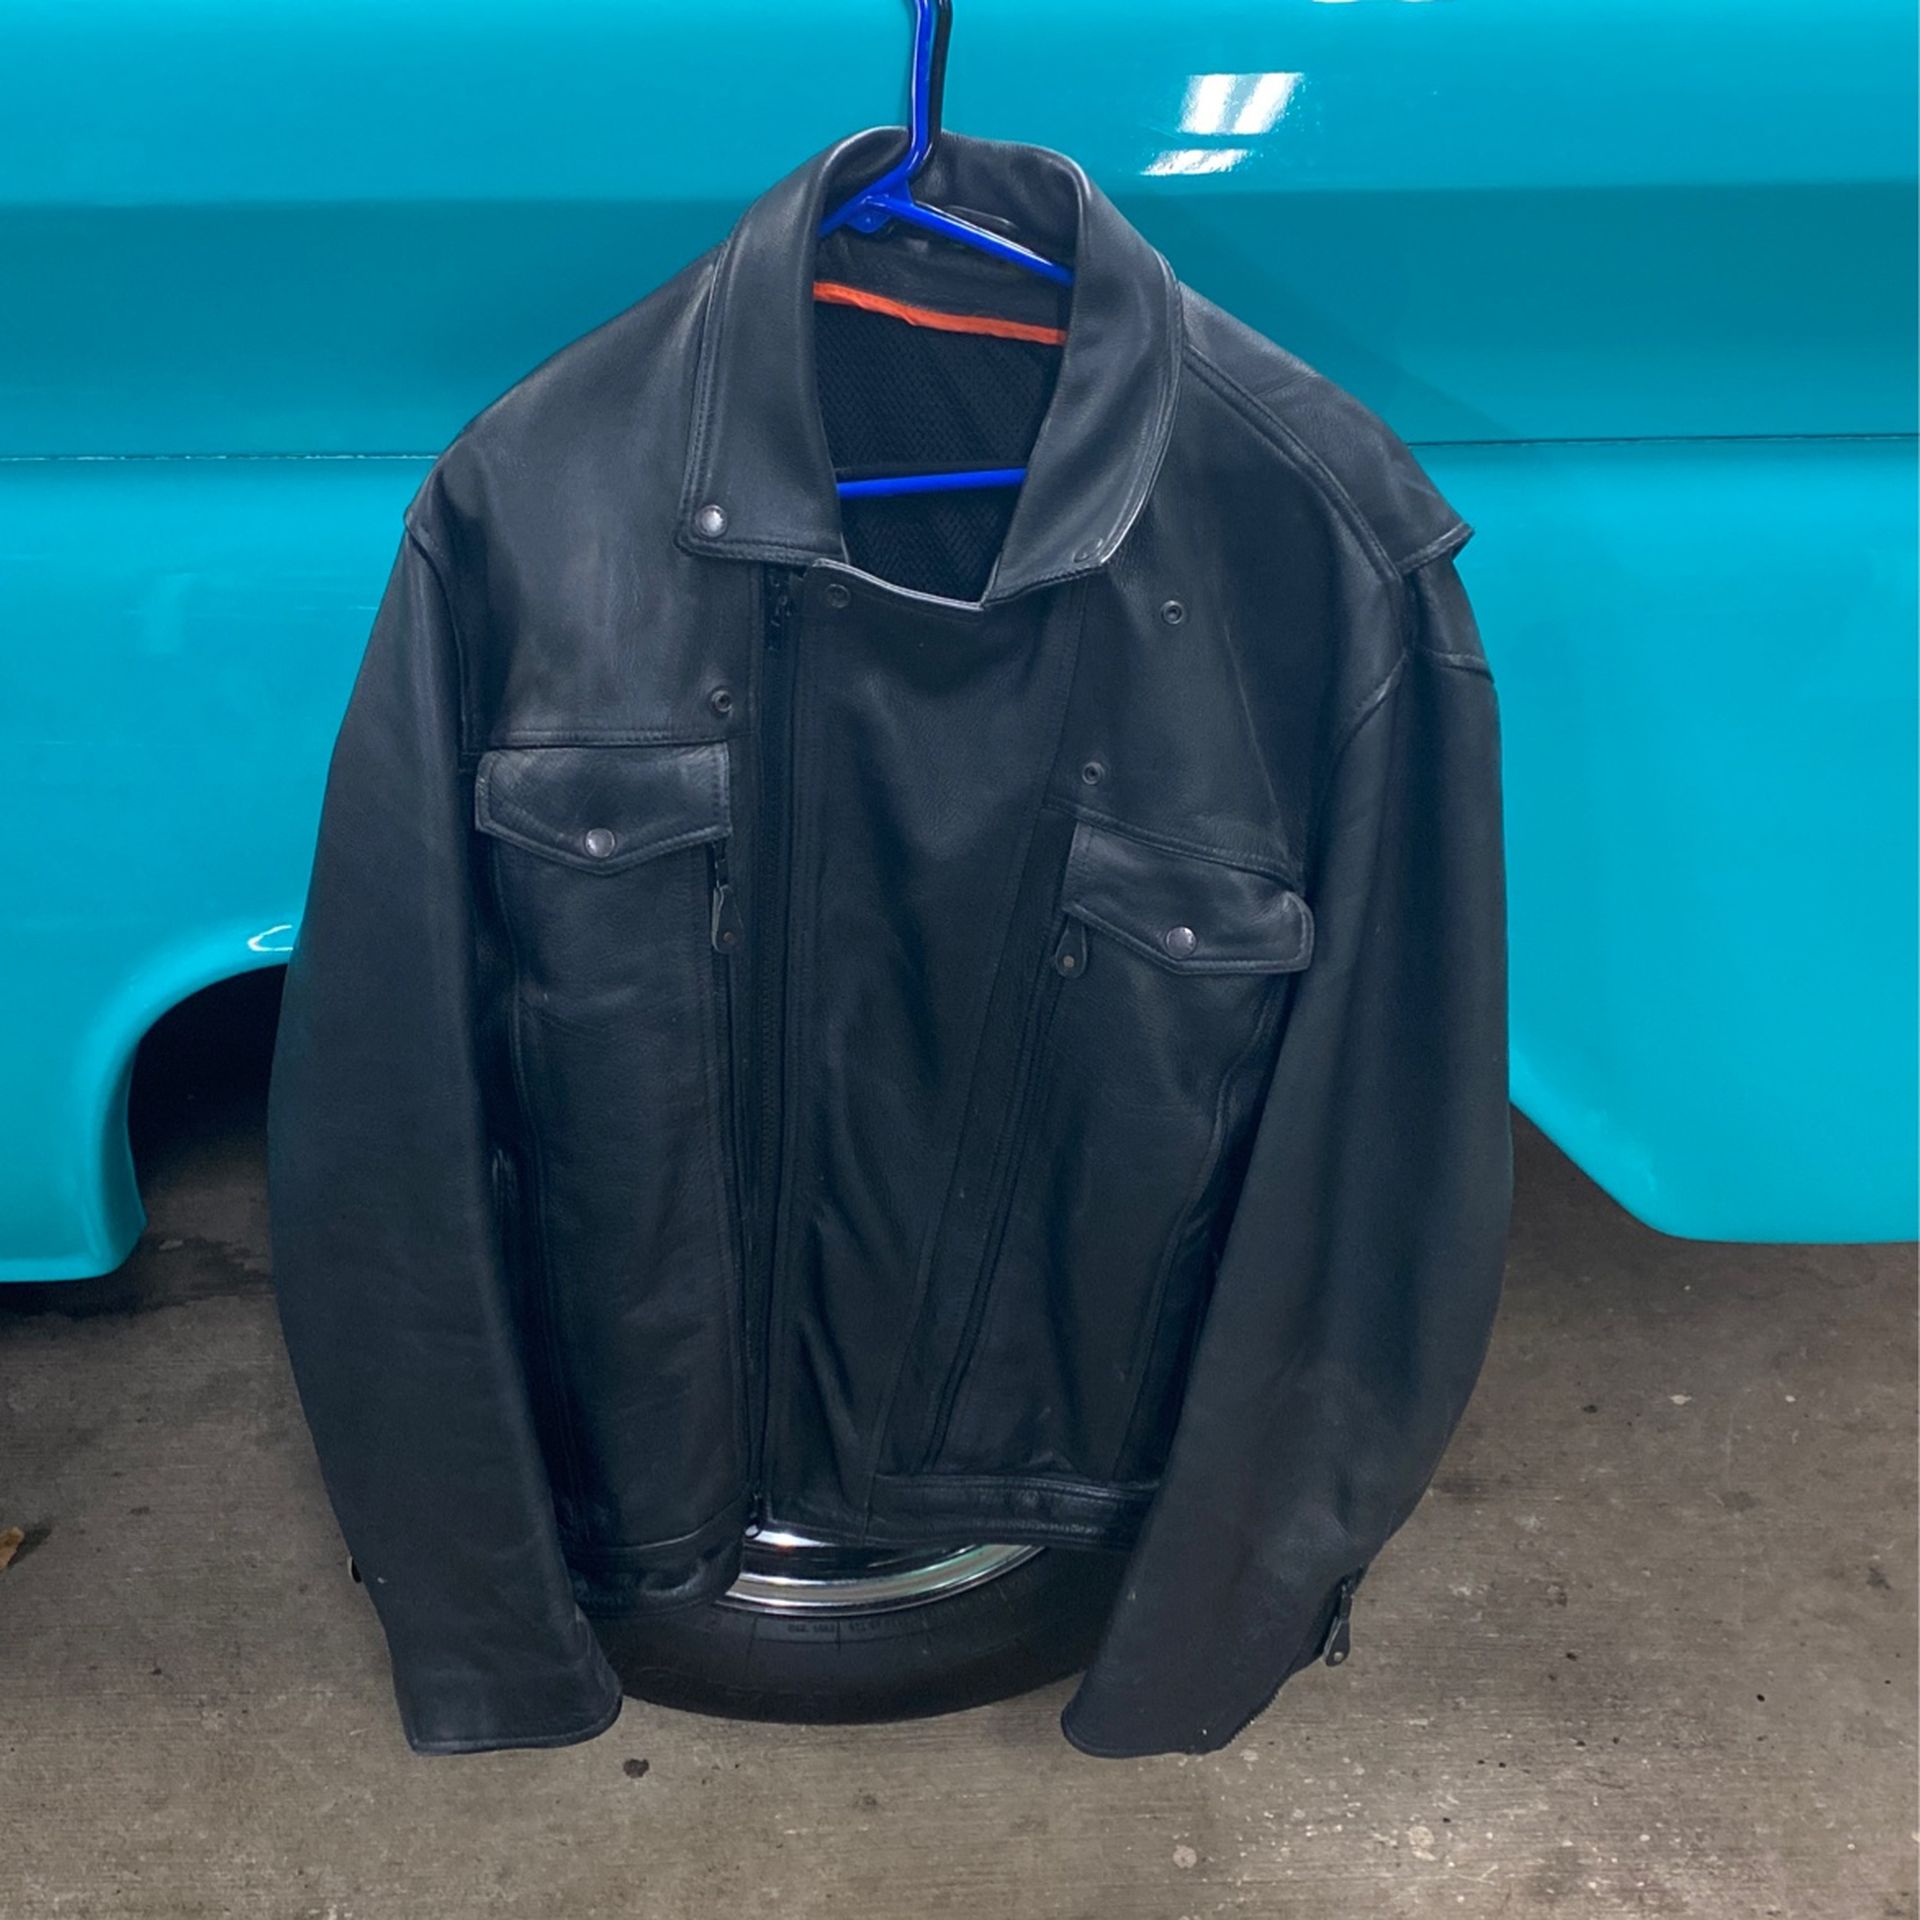 Size 2X leather riding jacket